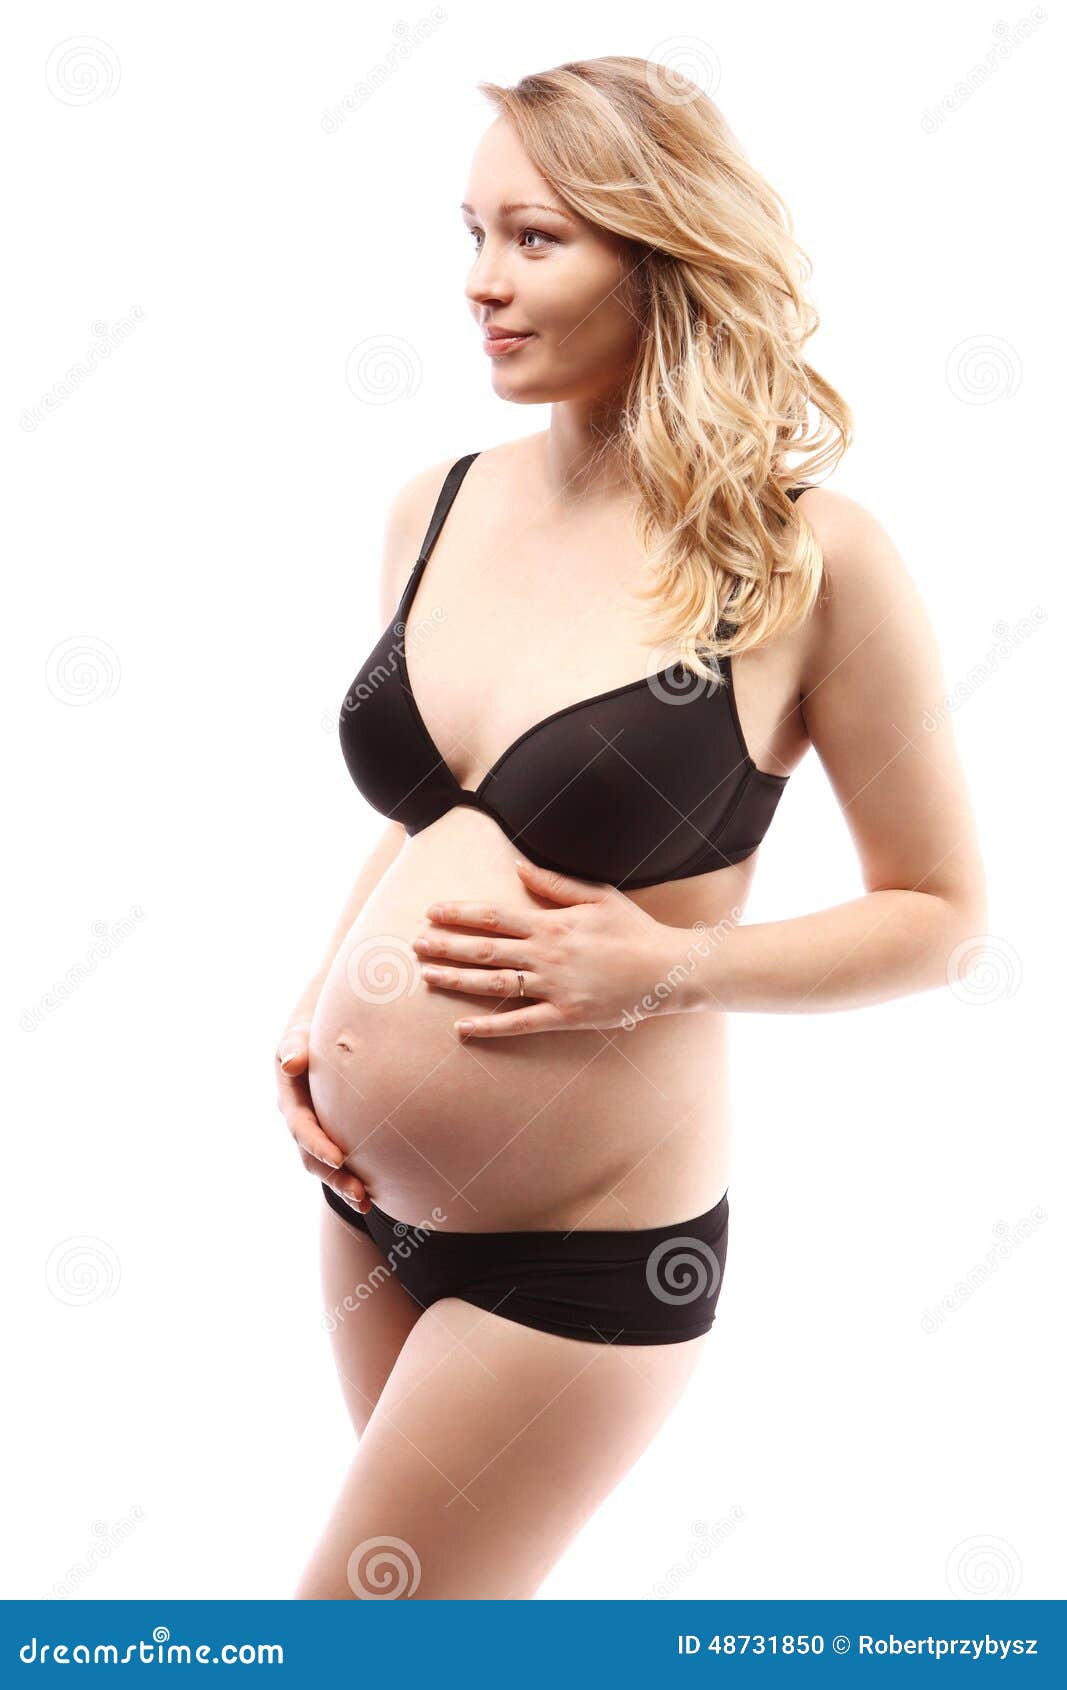 Pregnant woman in panties